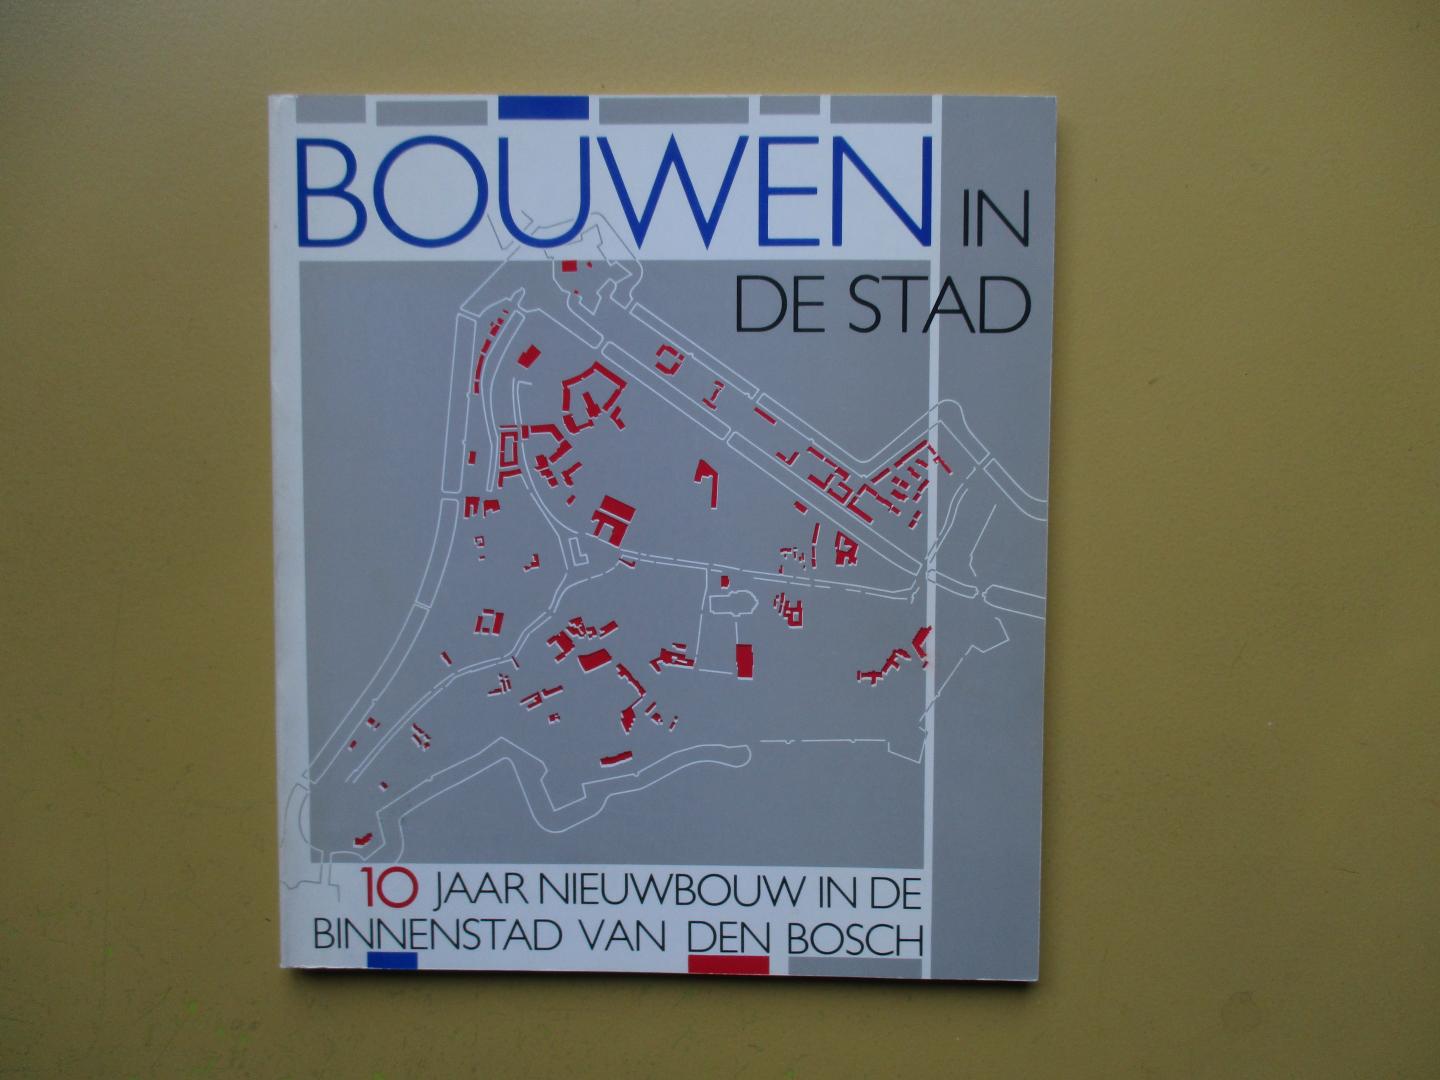 Laan, Hans van der - Bouwen in de stad    10 jaar nieuwbouw in de binnenstad van Den Bosch